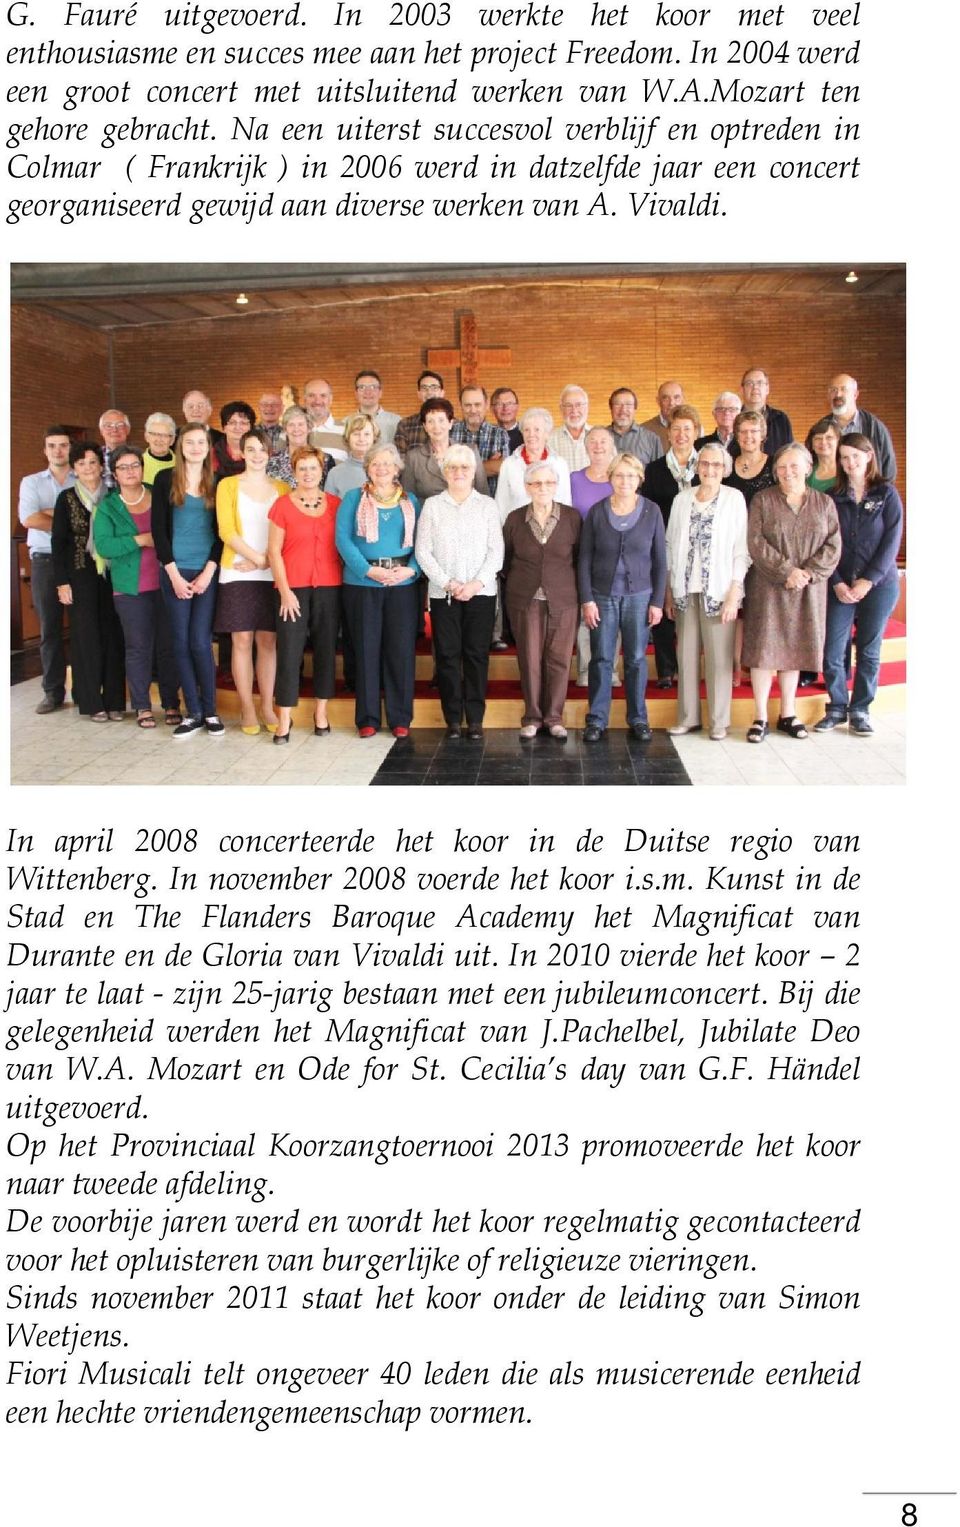 In april 2008 concerteerde het koor in de Duitse regio van Wittenberg. In november 2008 voerde het koor i.s.m. Kunst in de Stad en The Flanders Baroque Academy het Magnificat van Durante en de Gloria van Vivaldi uit.